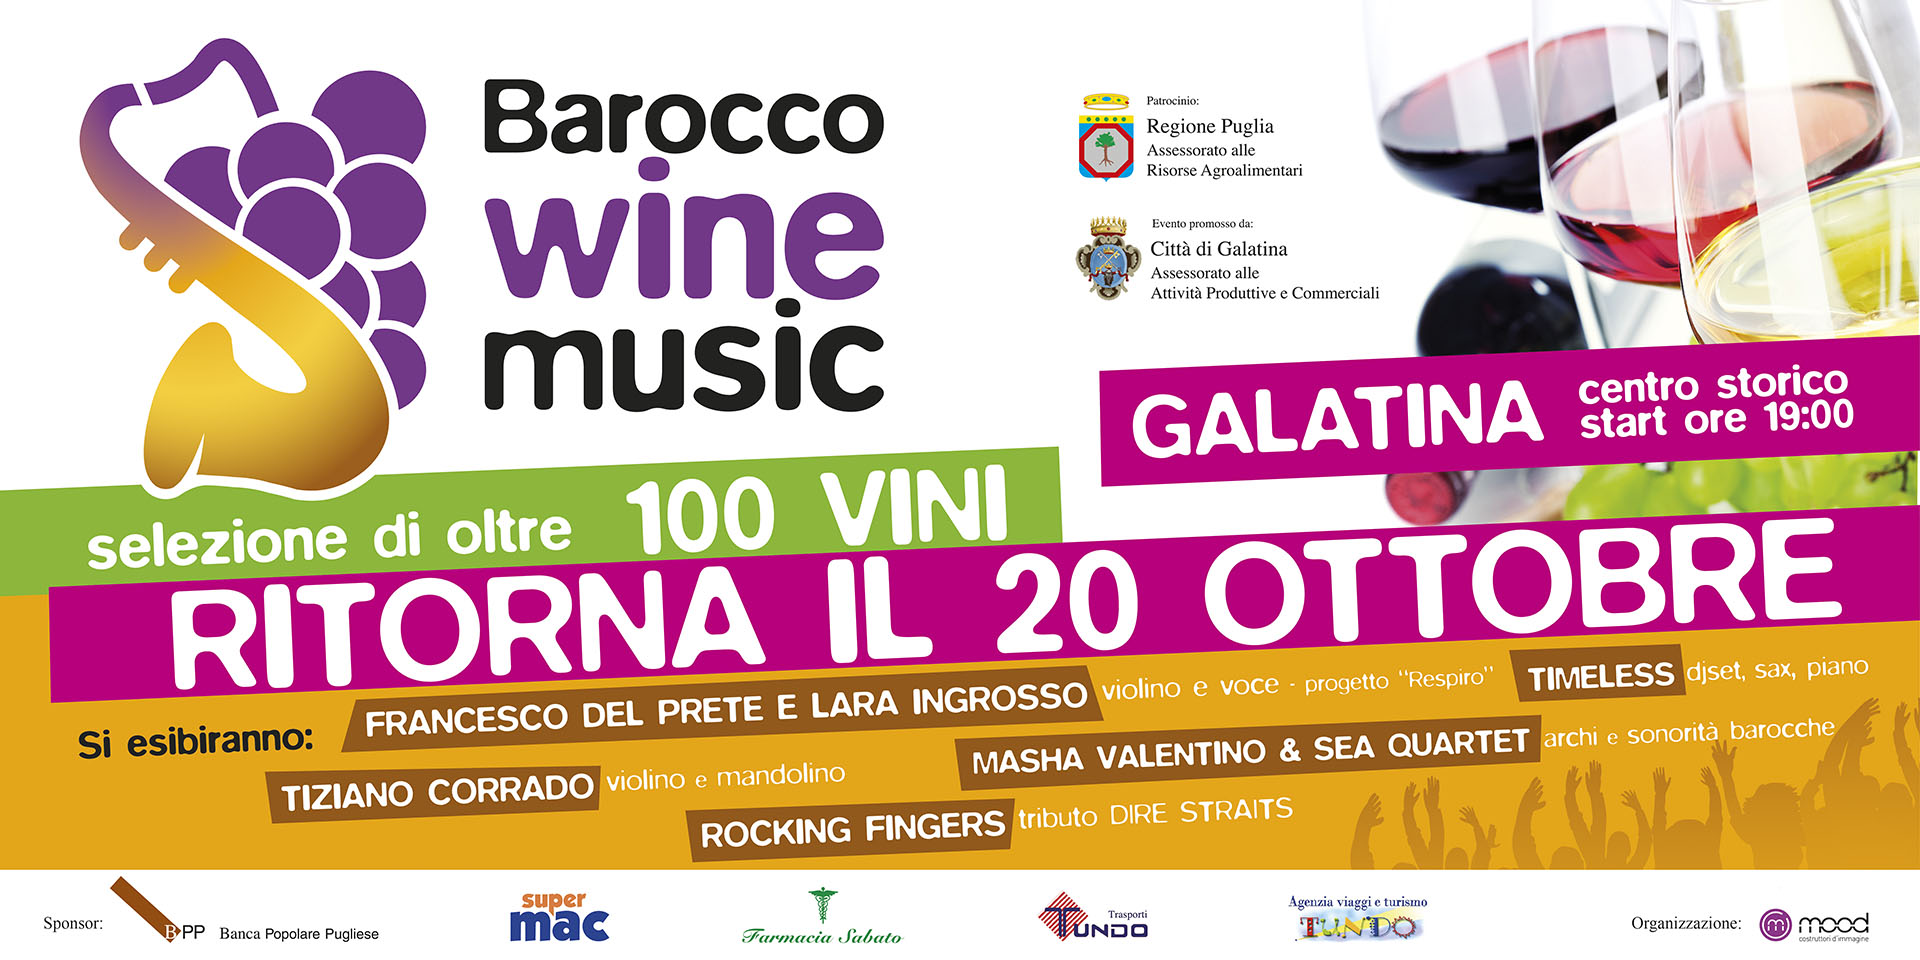 Ritorna a Galatina il Barocco Wine Music